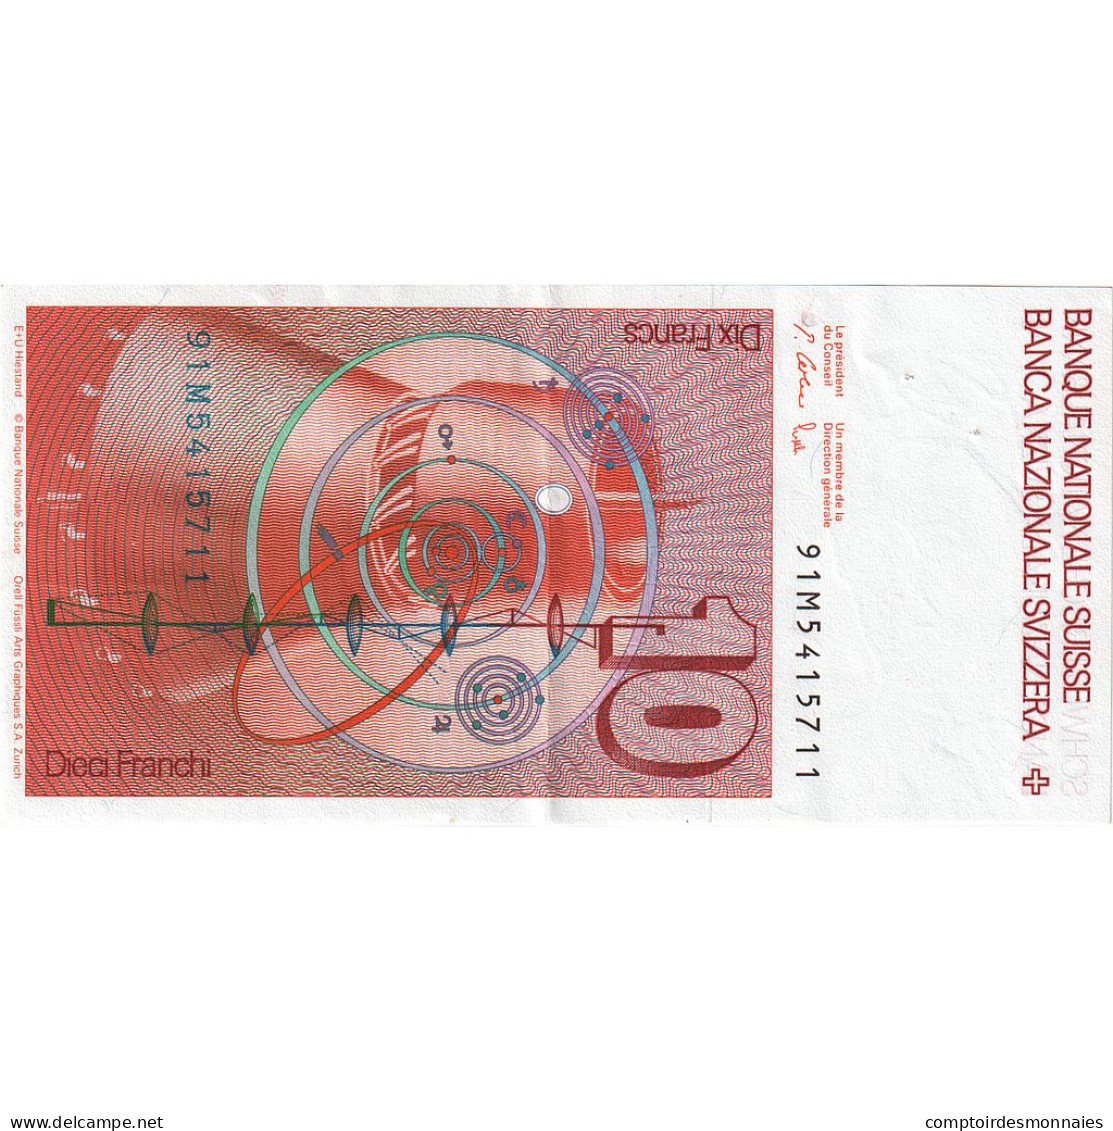 Suisse, 10 Franken, 1987, KM:53g, SUP - Switzerland